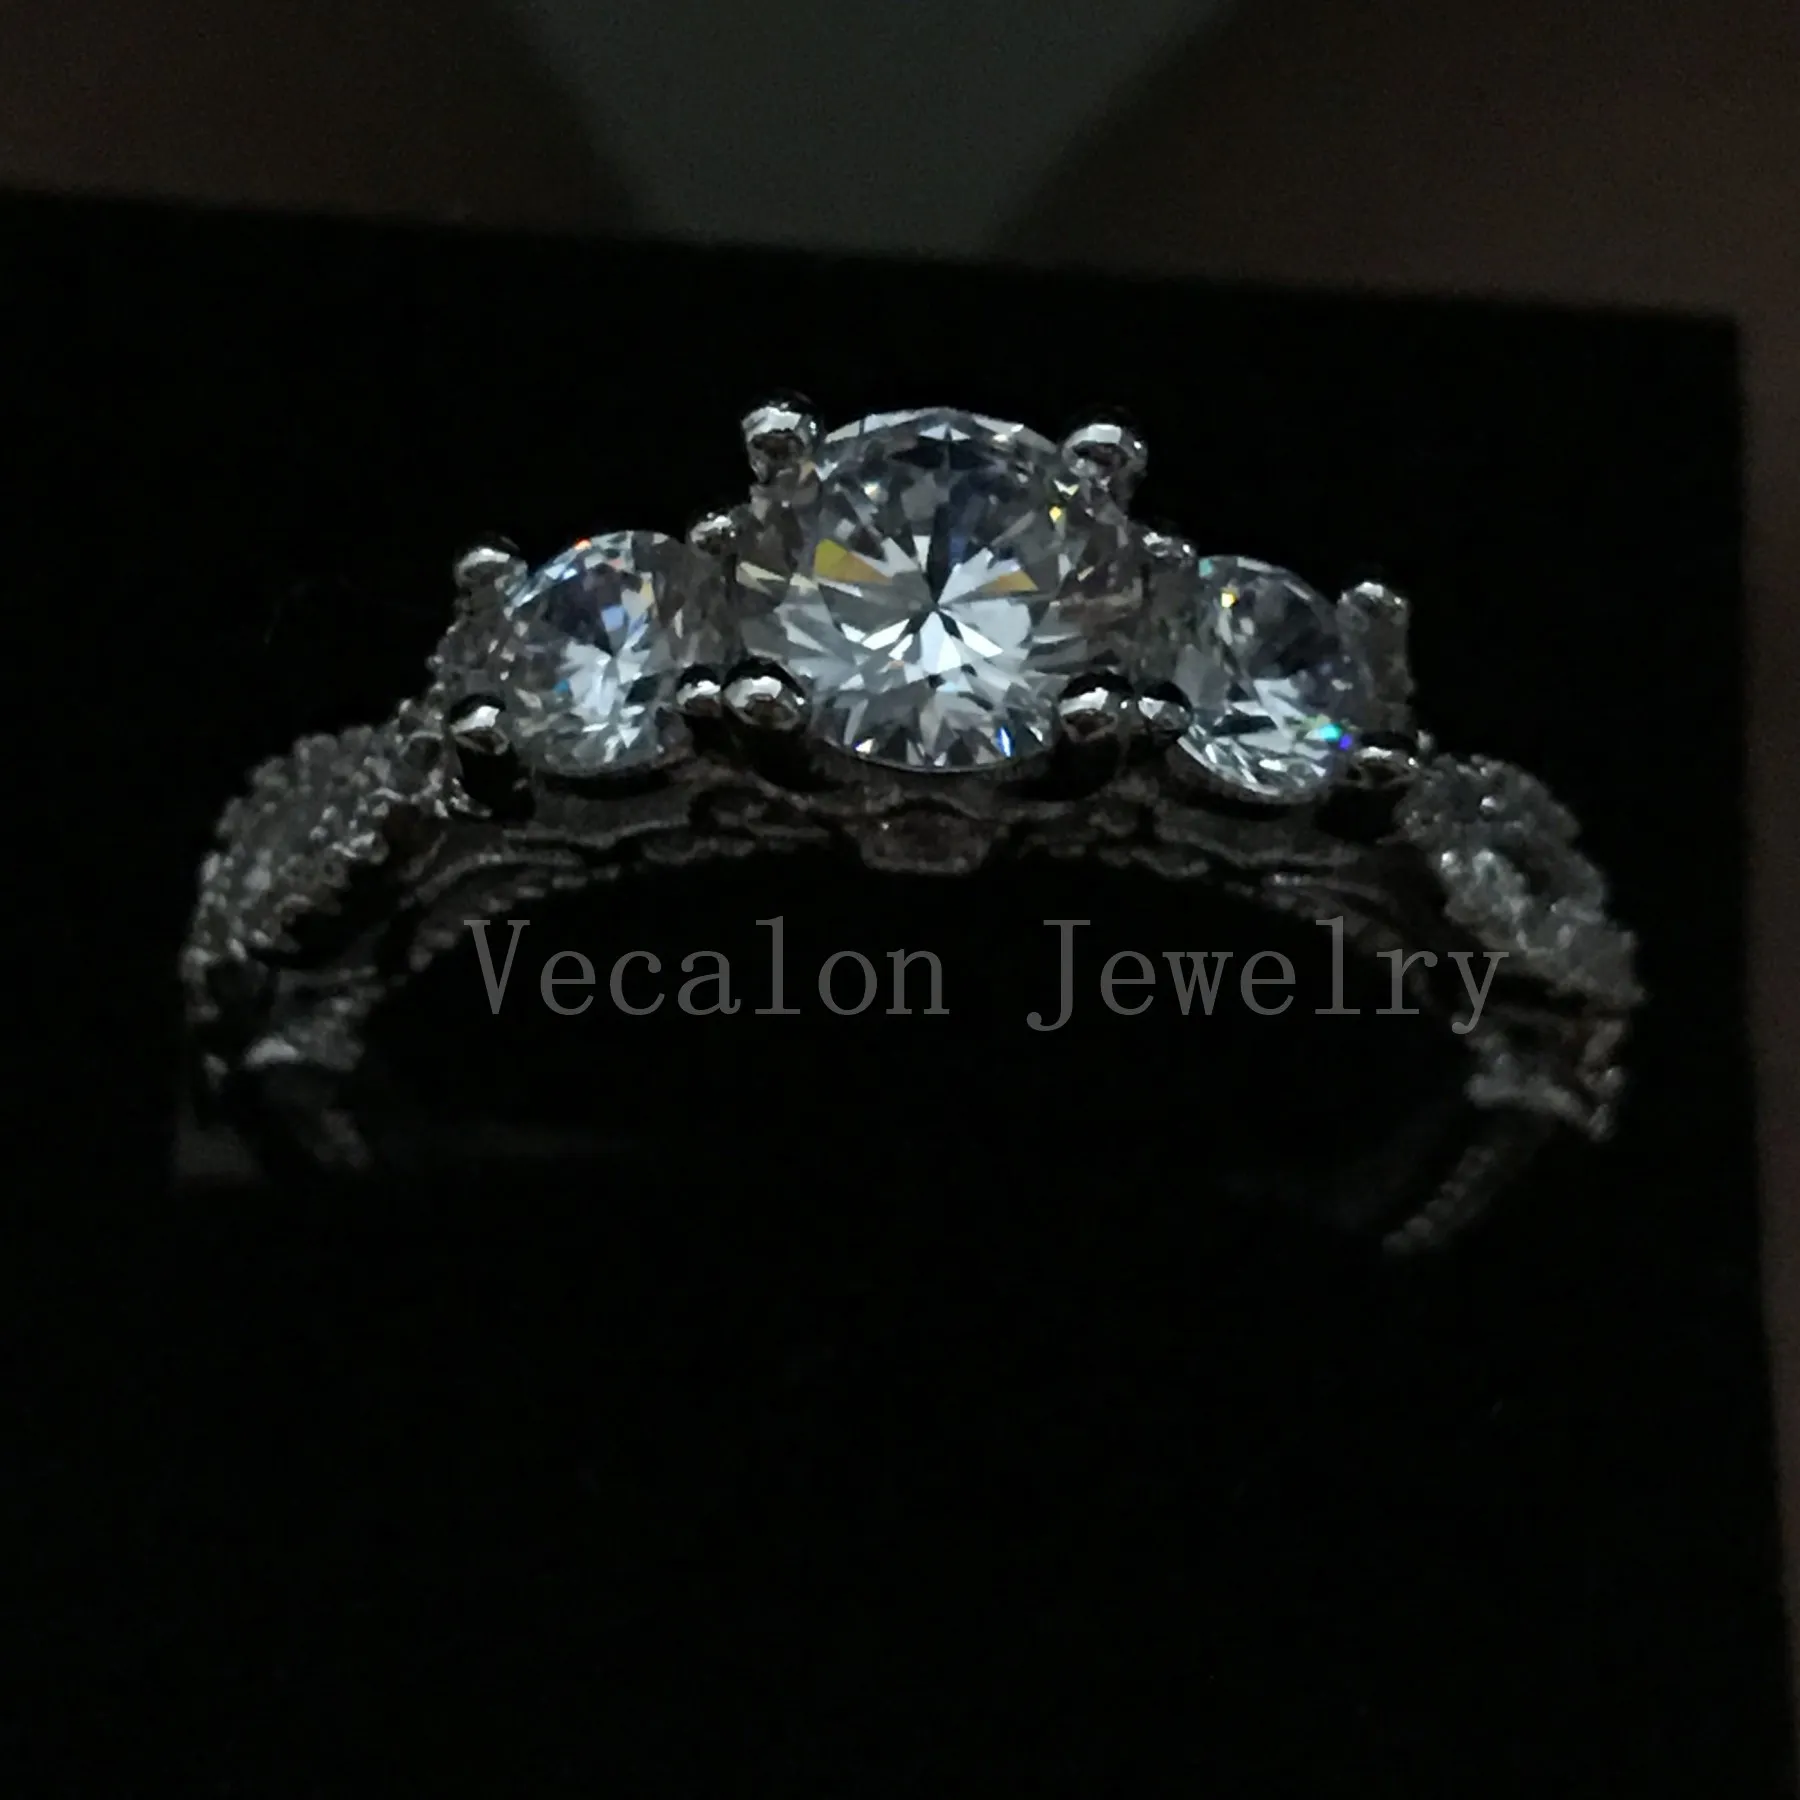 VECCALON Fashion Jewelry Vintage Engagement Band Band Anello le donne CZ Diamond Ring 925 Sterling Silver Silver Anello Femmina Anello